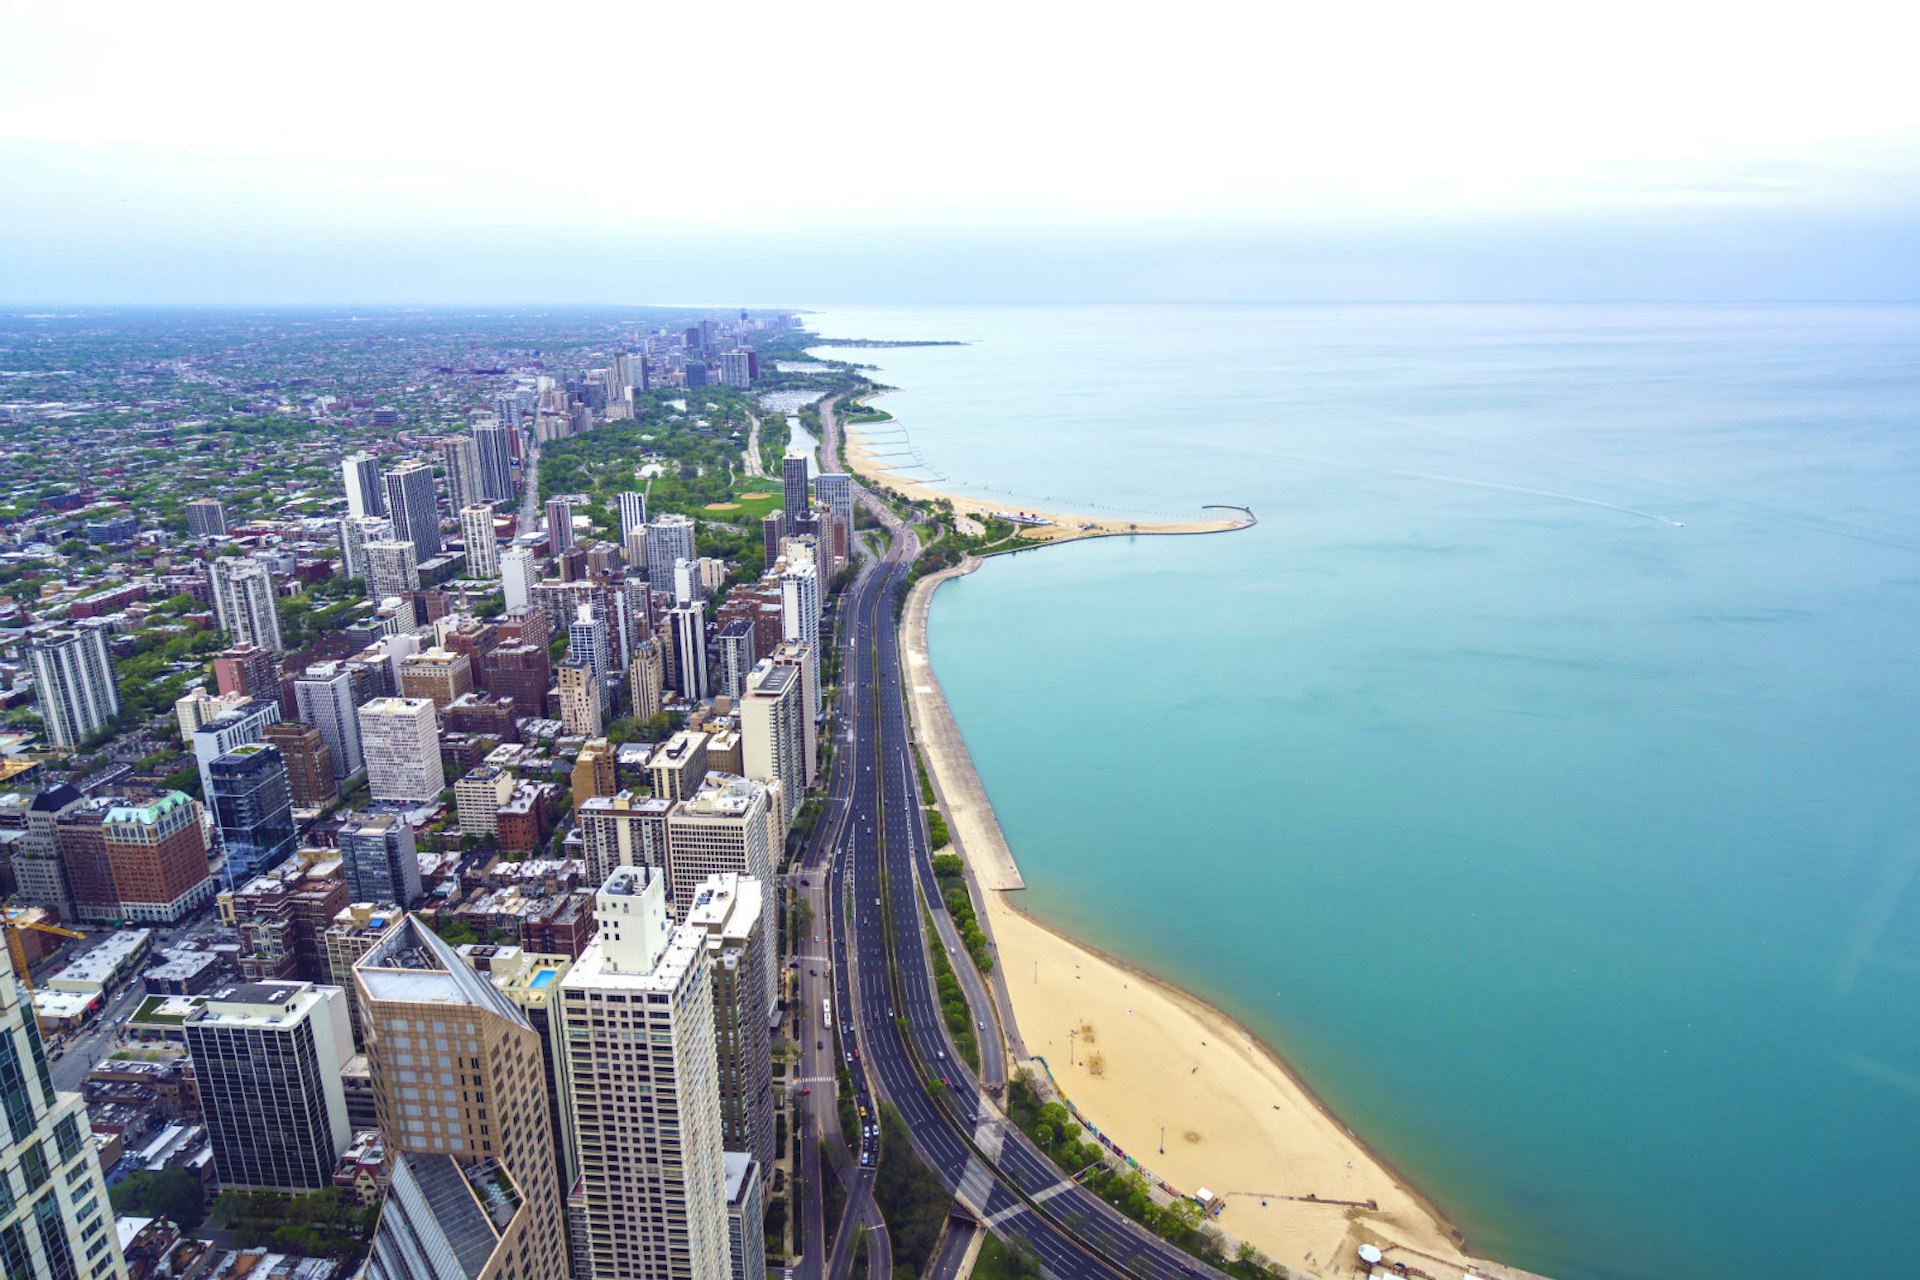 Great lakes – Lake Michigan, Chicago